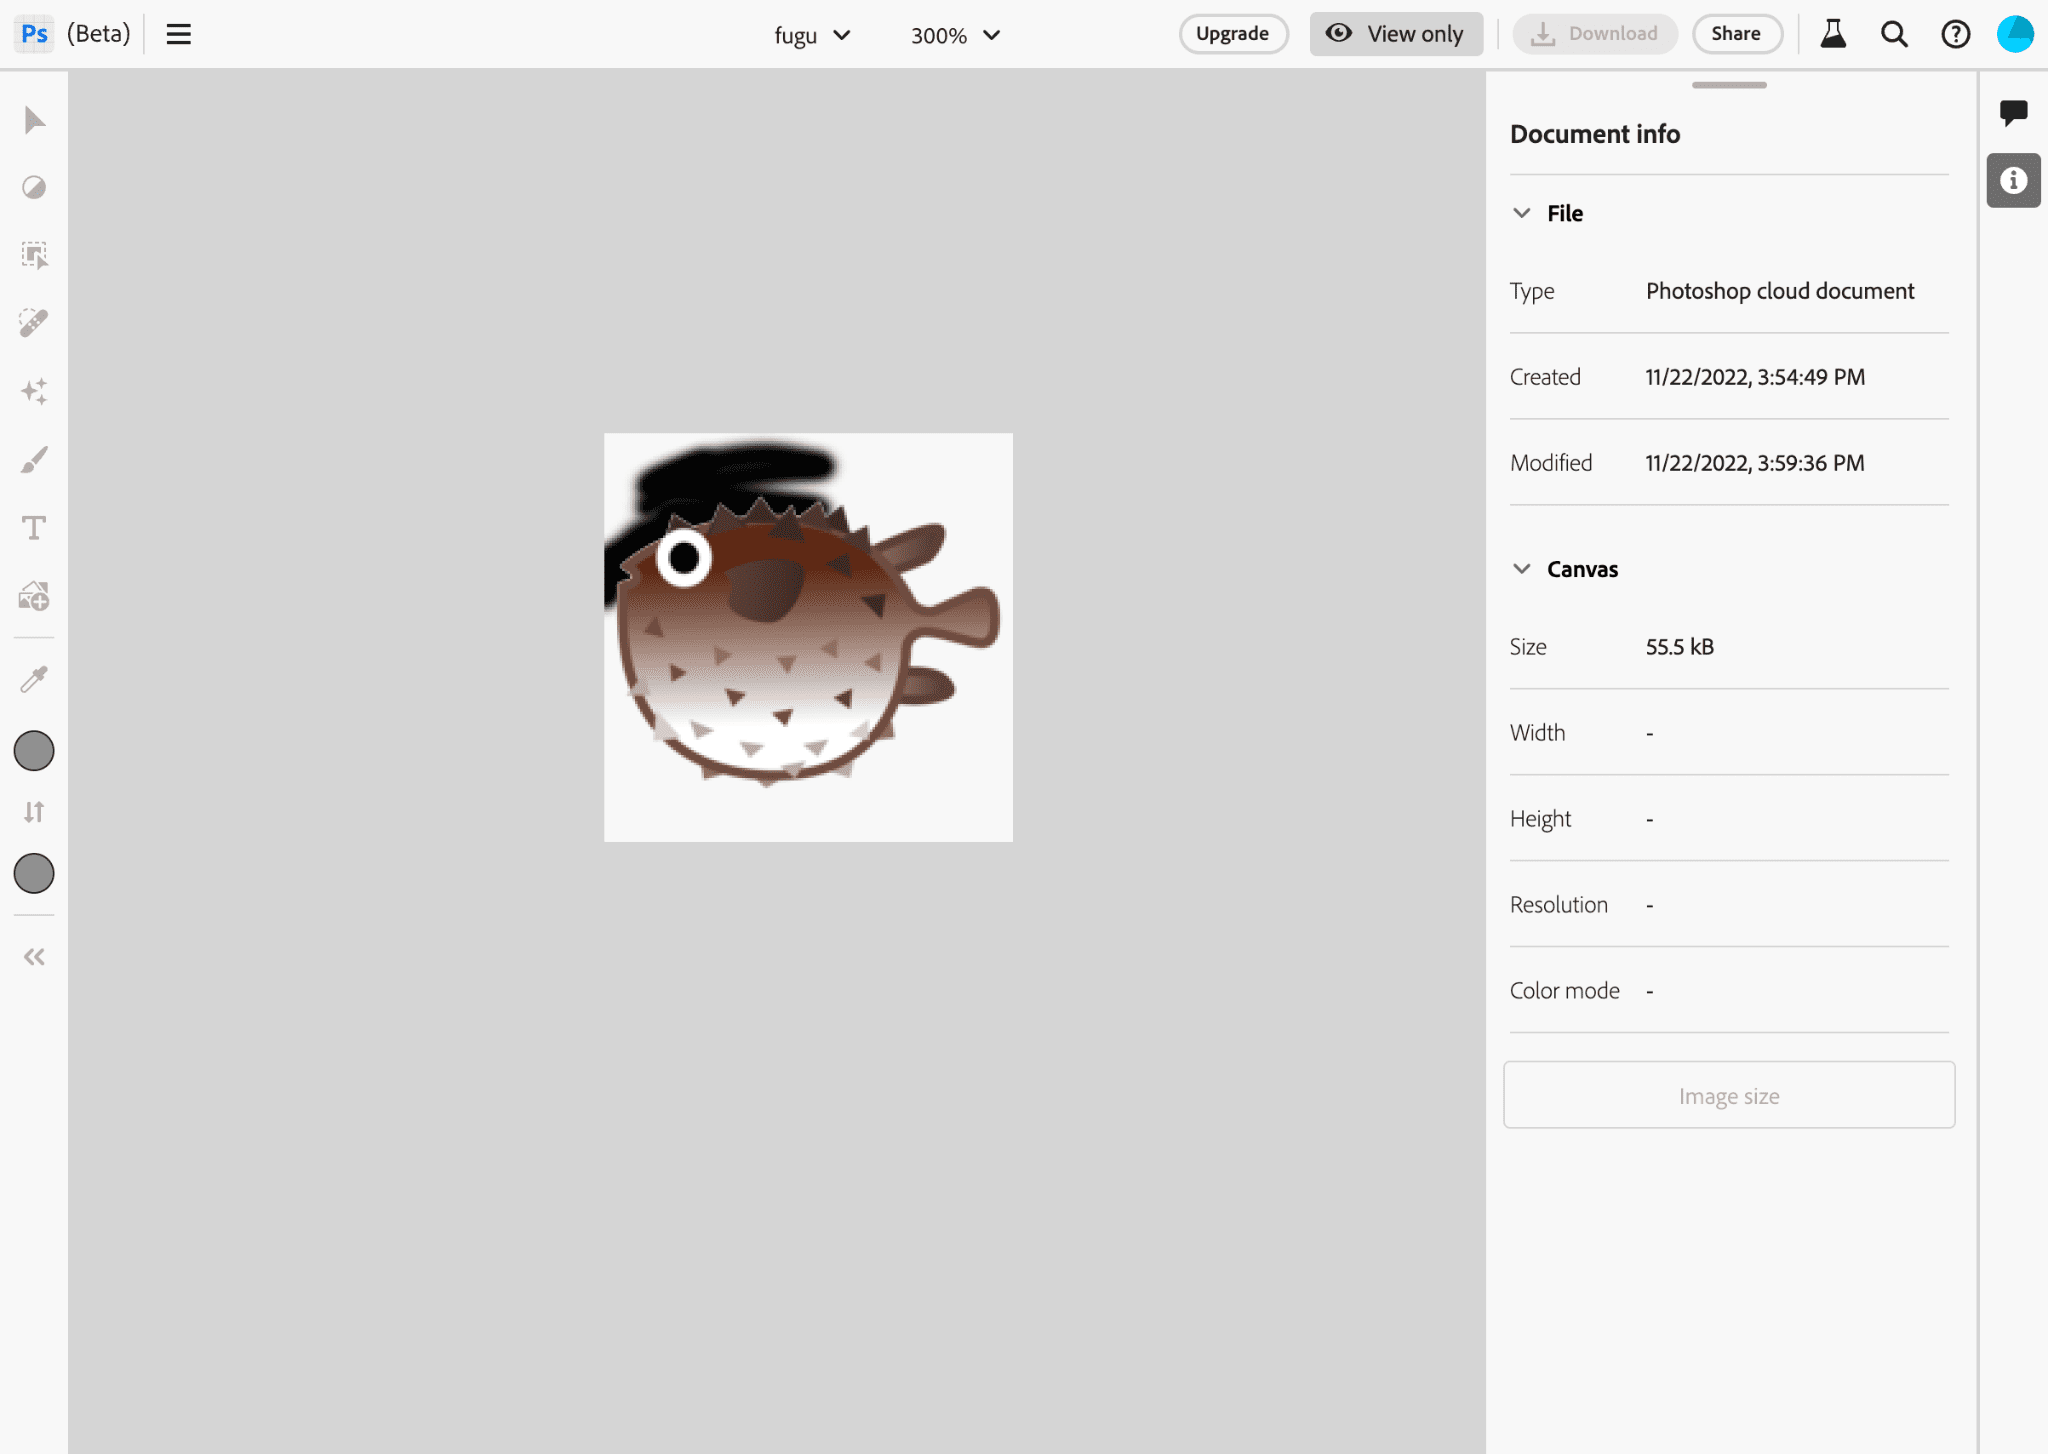 編輯 Project Fugu 標誌圖片時的 Photoshop 應用程式。